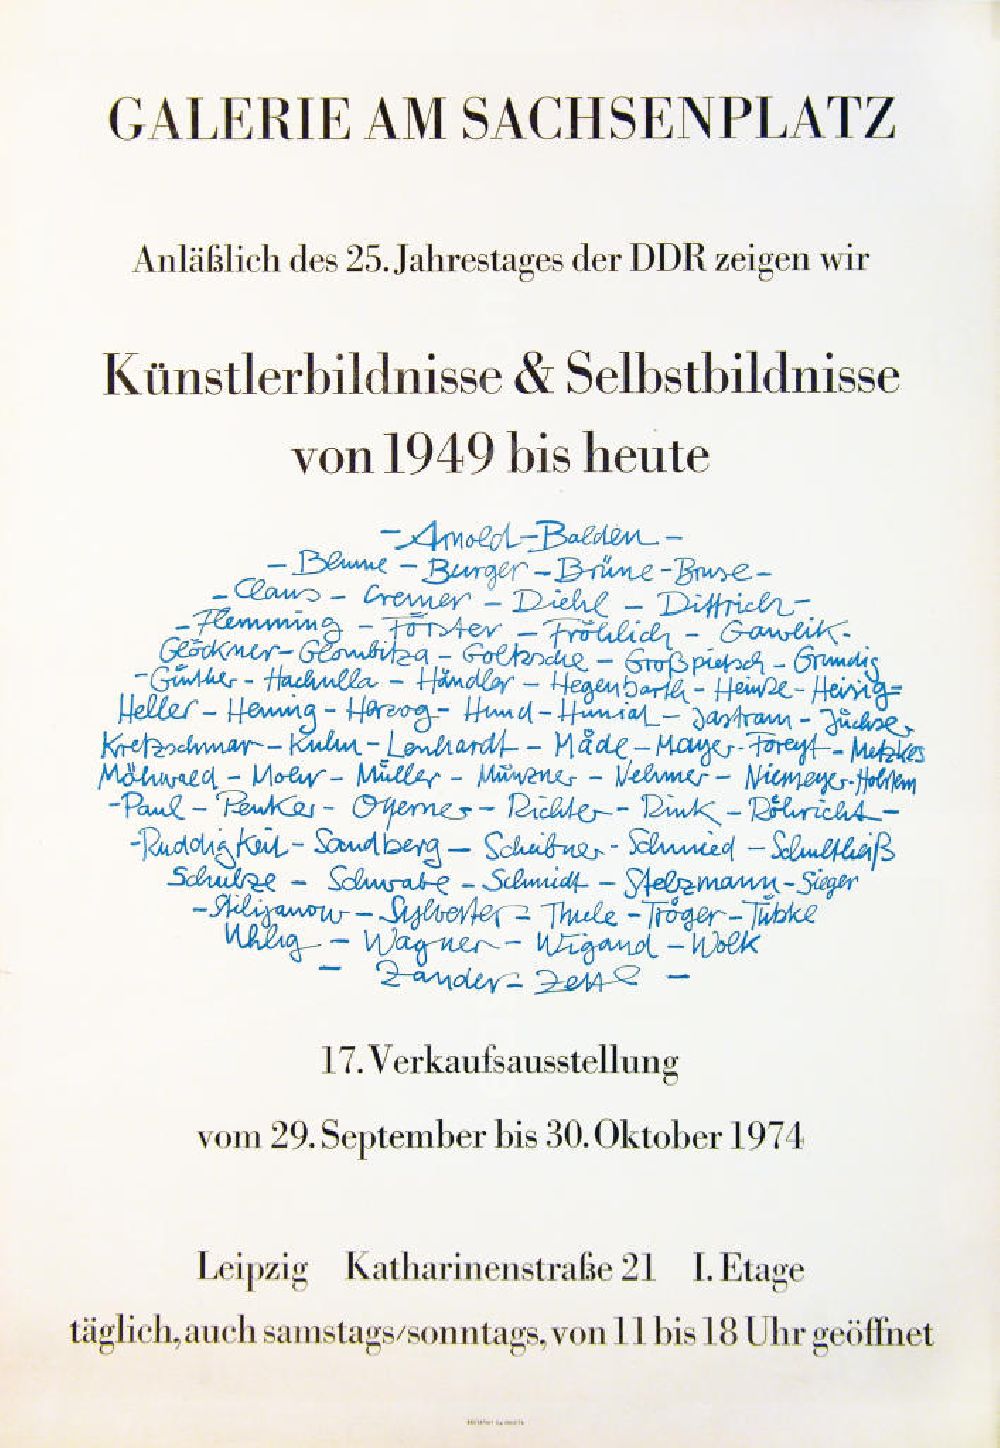 Berlin: Plakat der Ausstellung Künstlerbildnisse und Selbstbildnisse von 49 bis heute über Herbert Sandberg vom 29.09.-30.10.1974 Galerie am Sachsenplatz anlässlich des 25. Jahrestages der DDR, 4